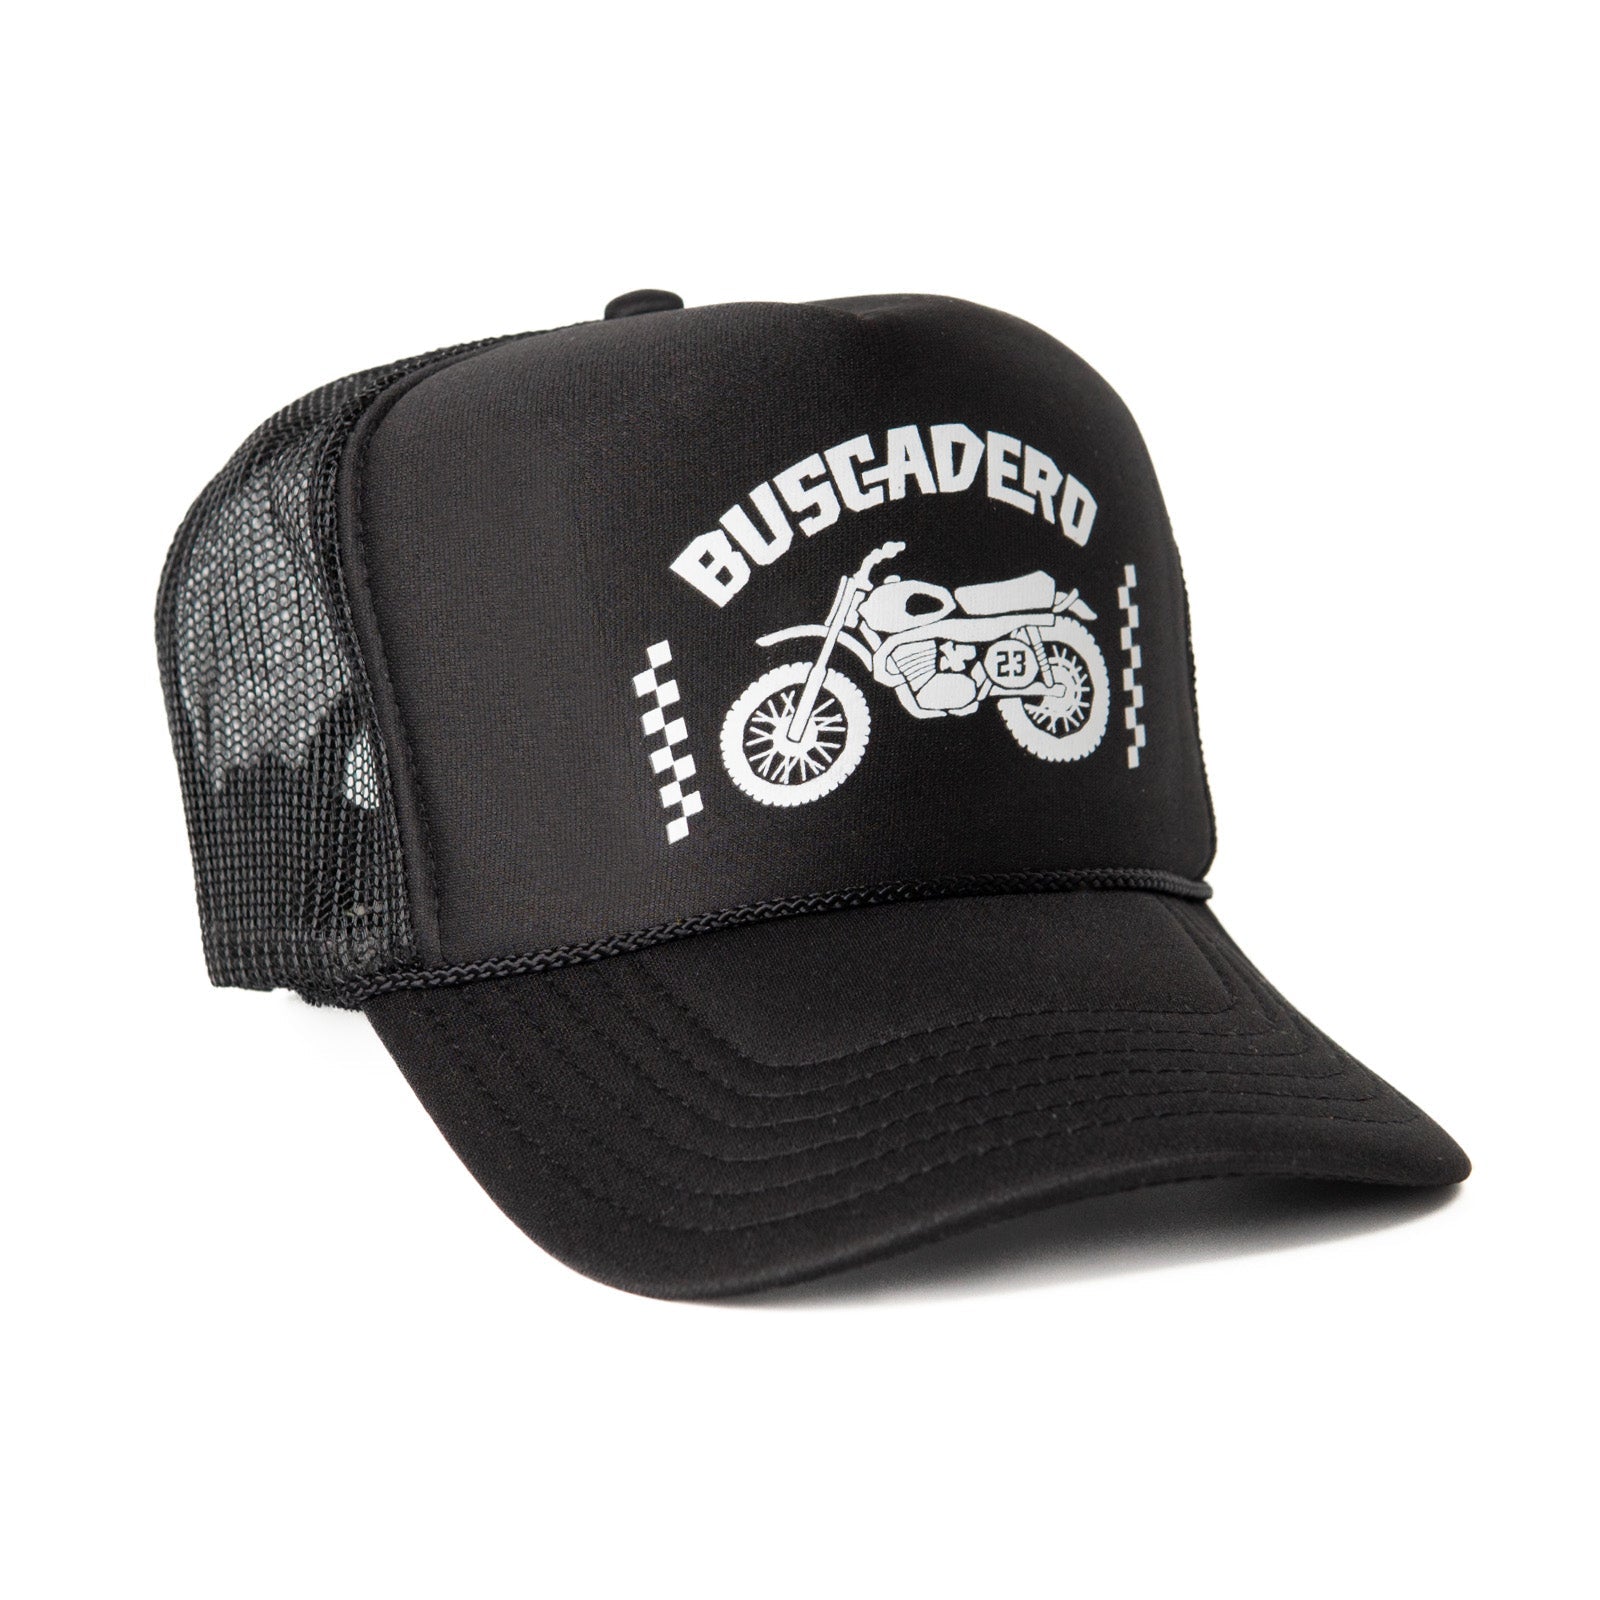 ‘Flags’ High Profile Foam Trucker Hat - Black